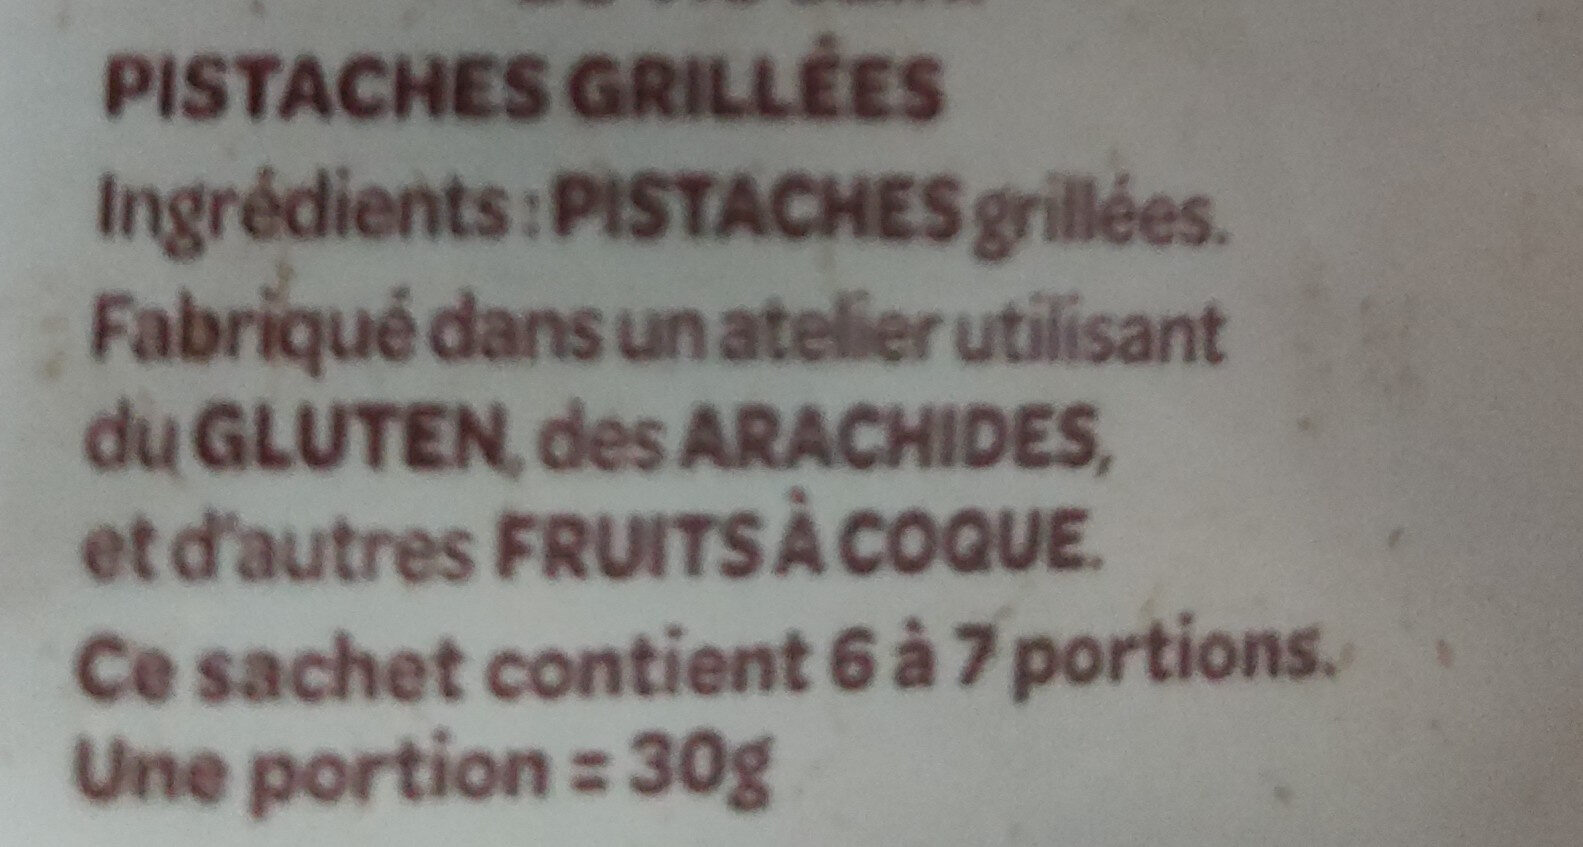 Pistaches grillées - Ingrédients - fr